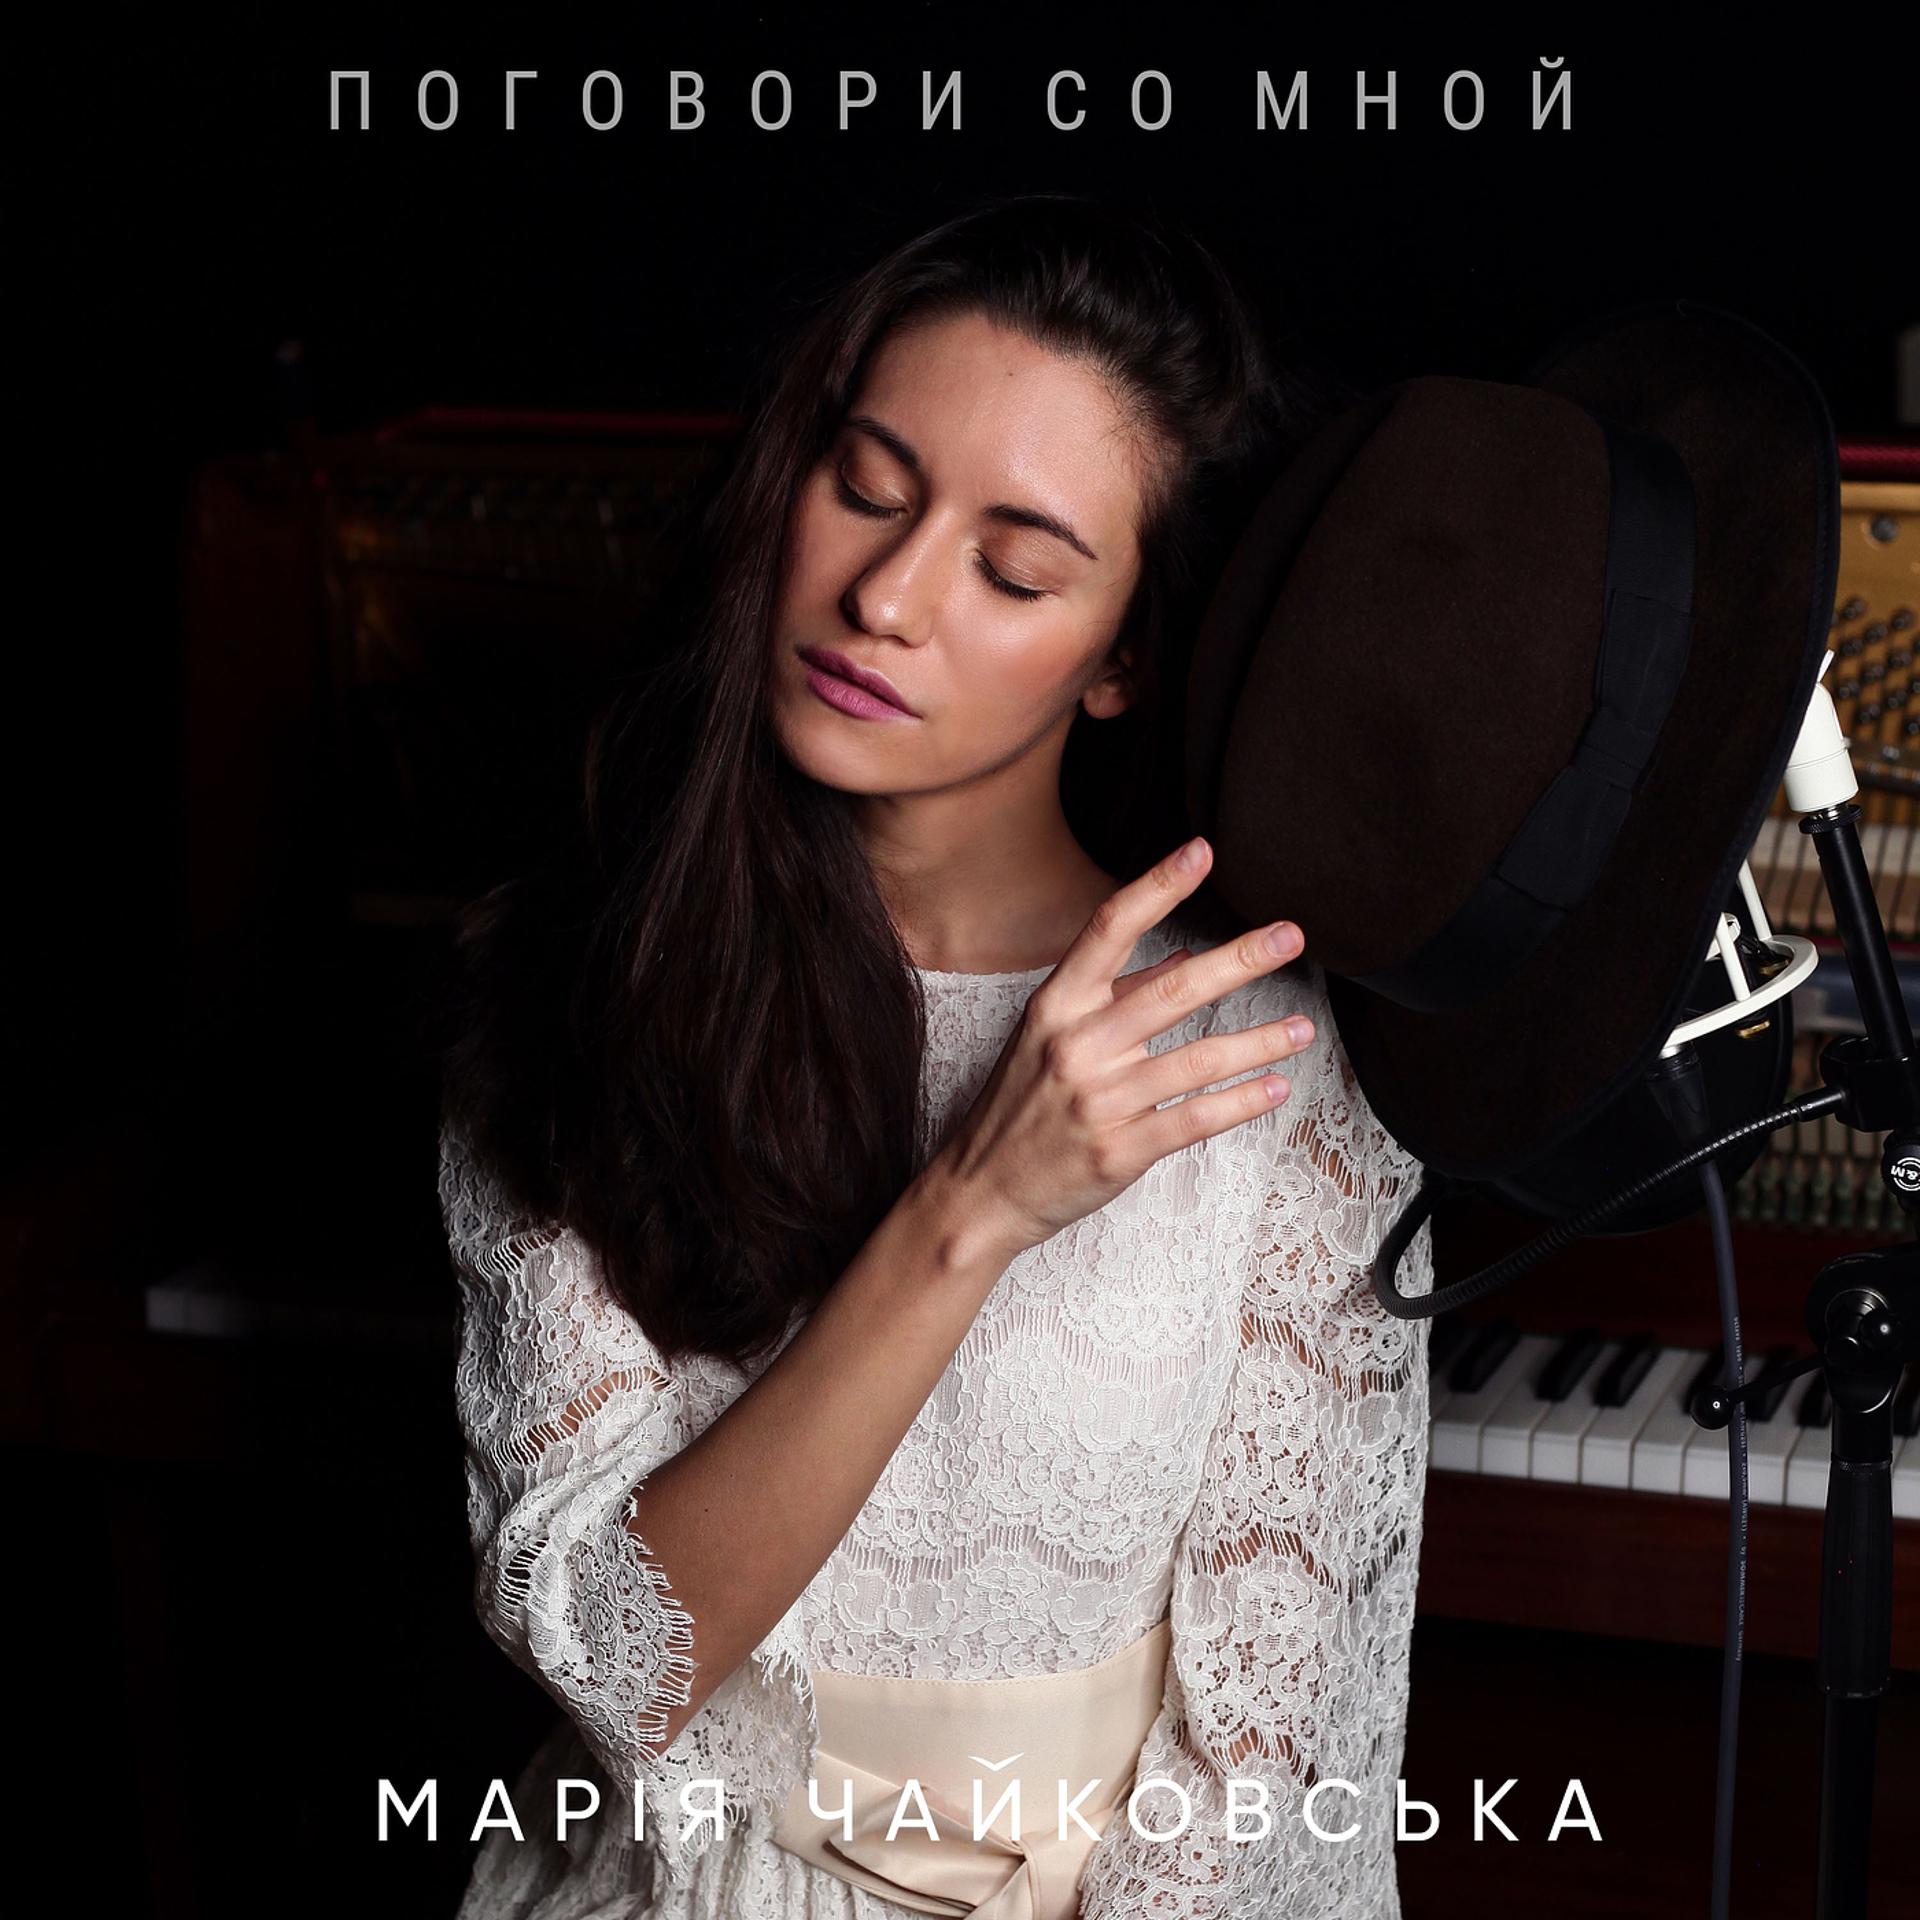 Песня поговори со мной в полночной. Maria Chaikovskaya.